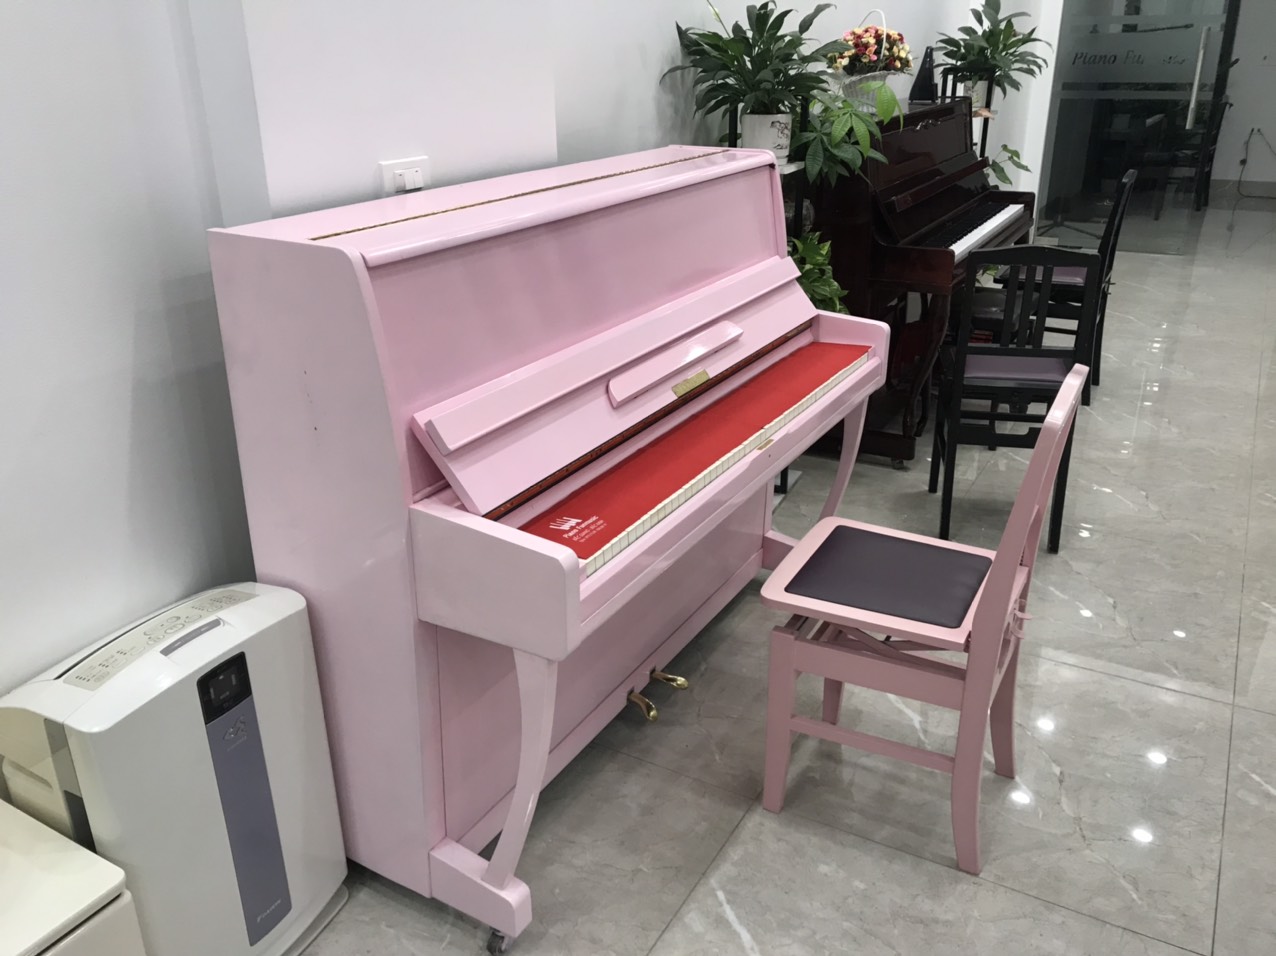 Piano Kinh Bắc